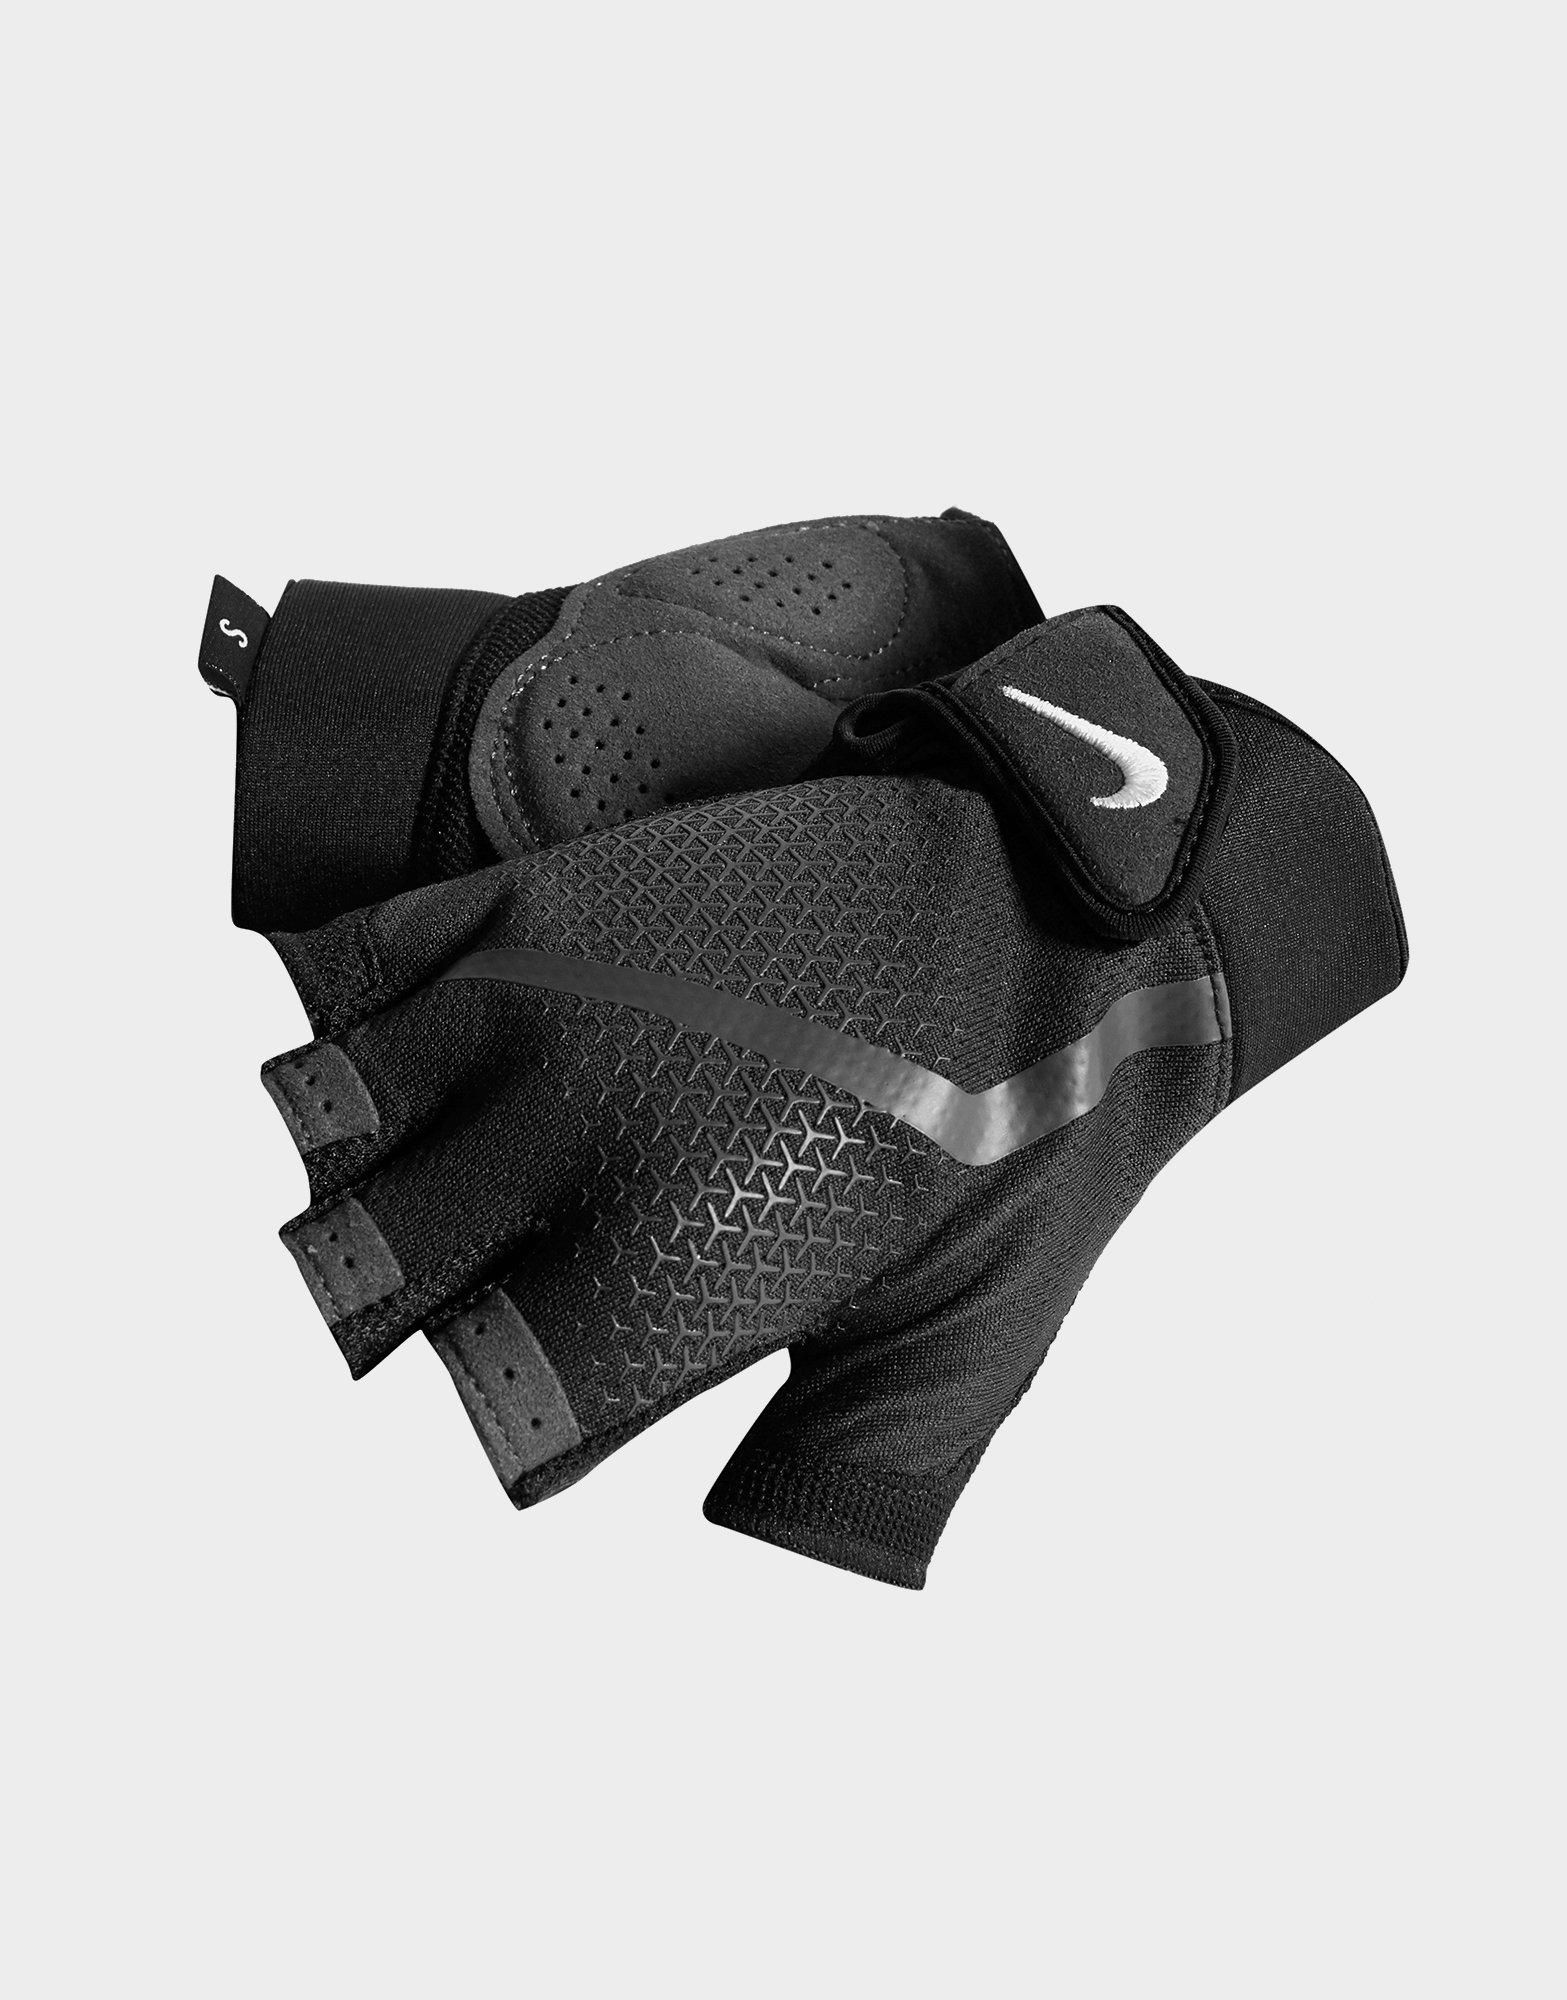 nike men's extreme fitness gloves